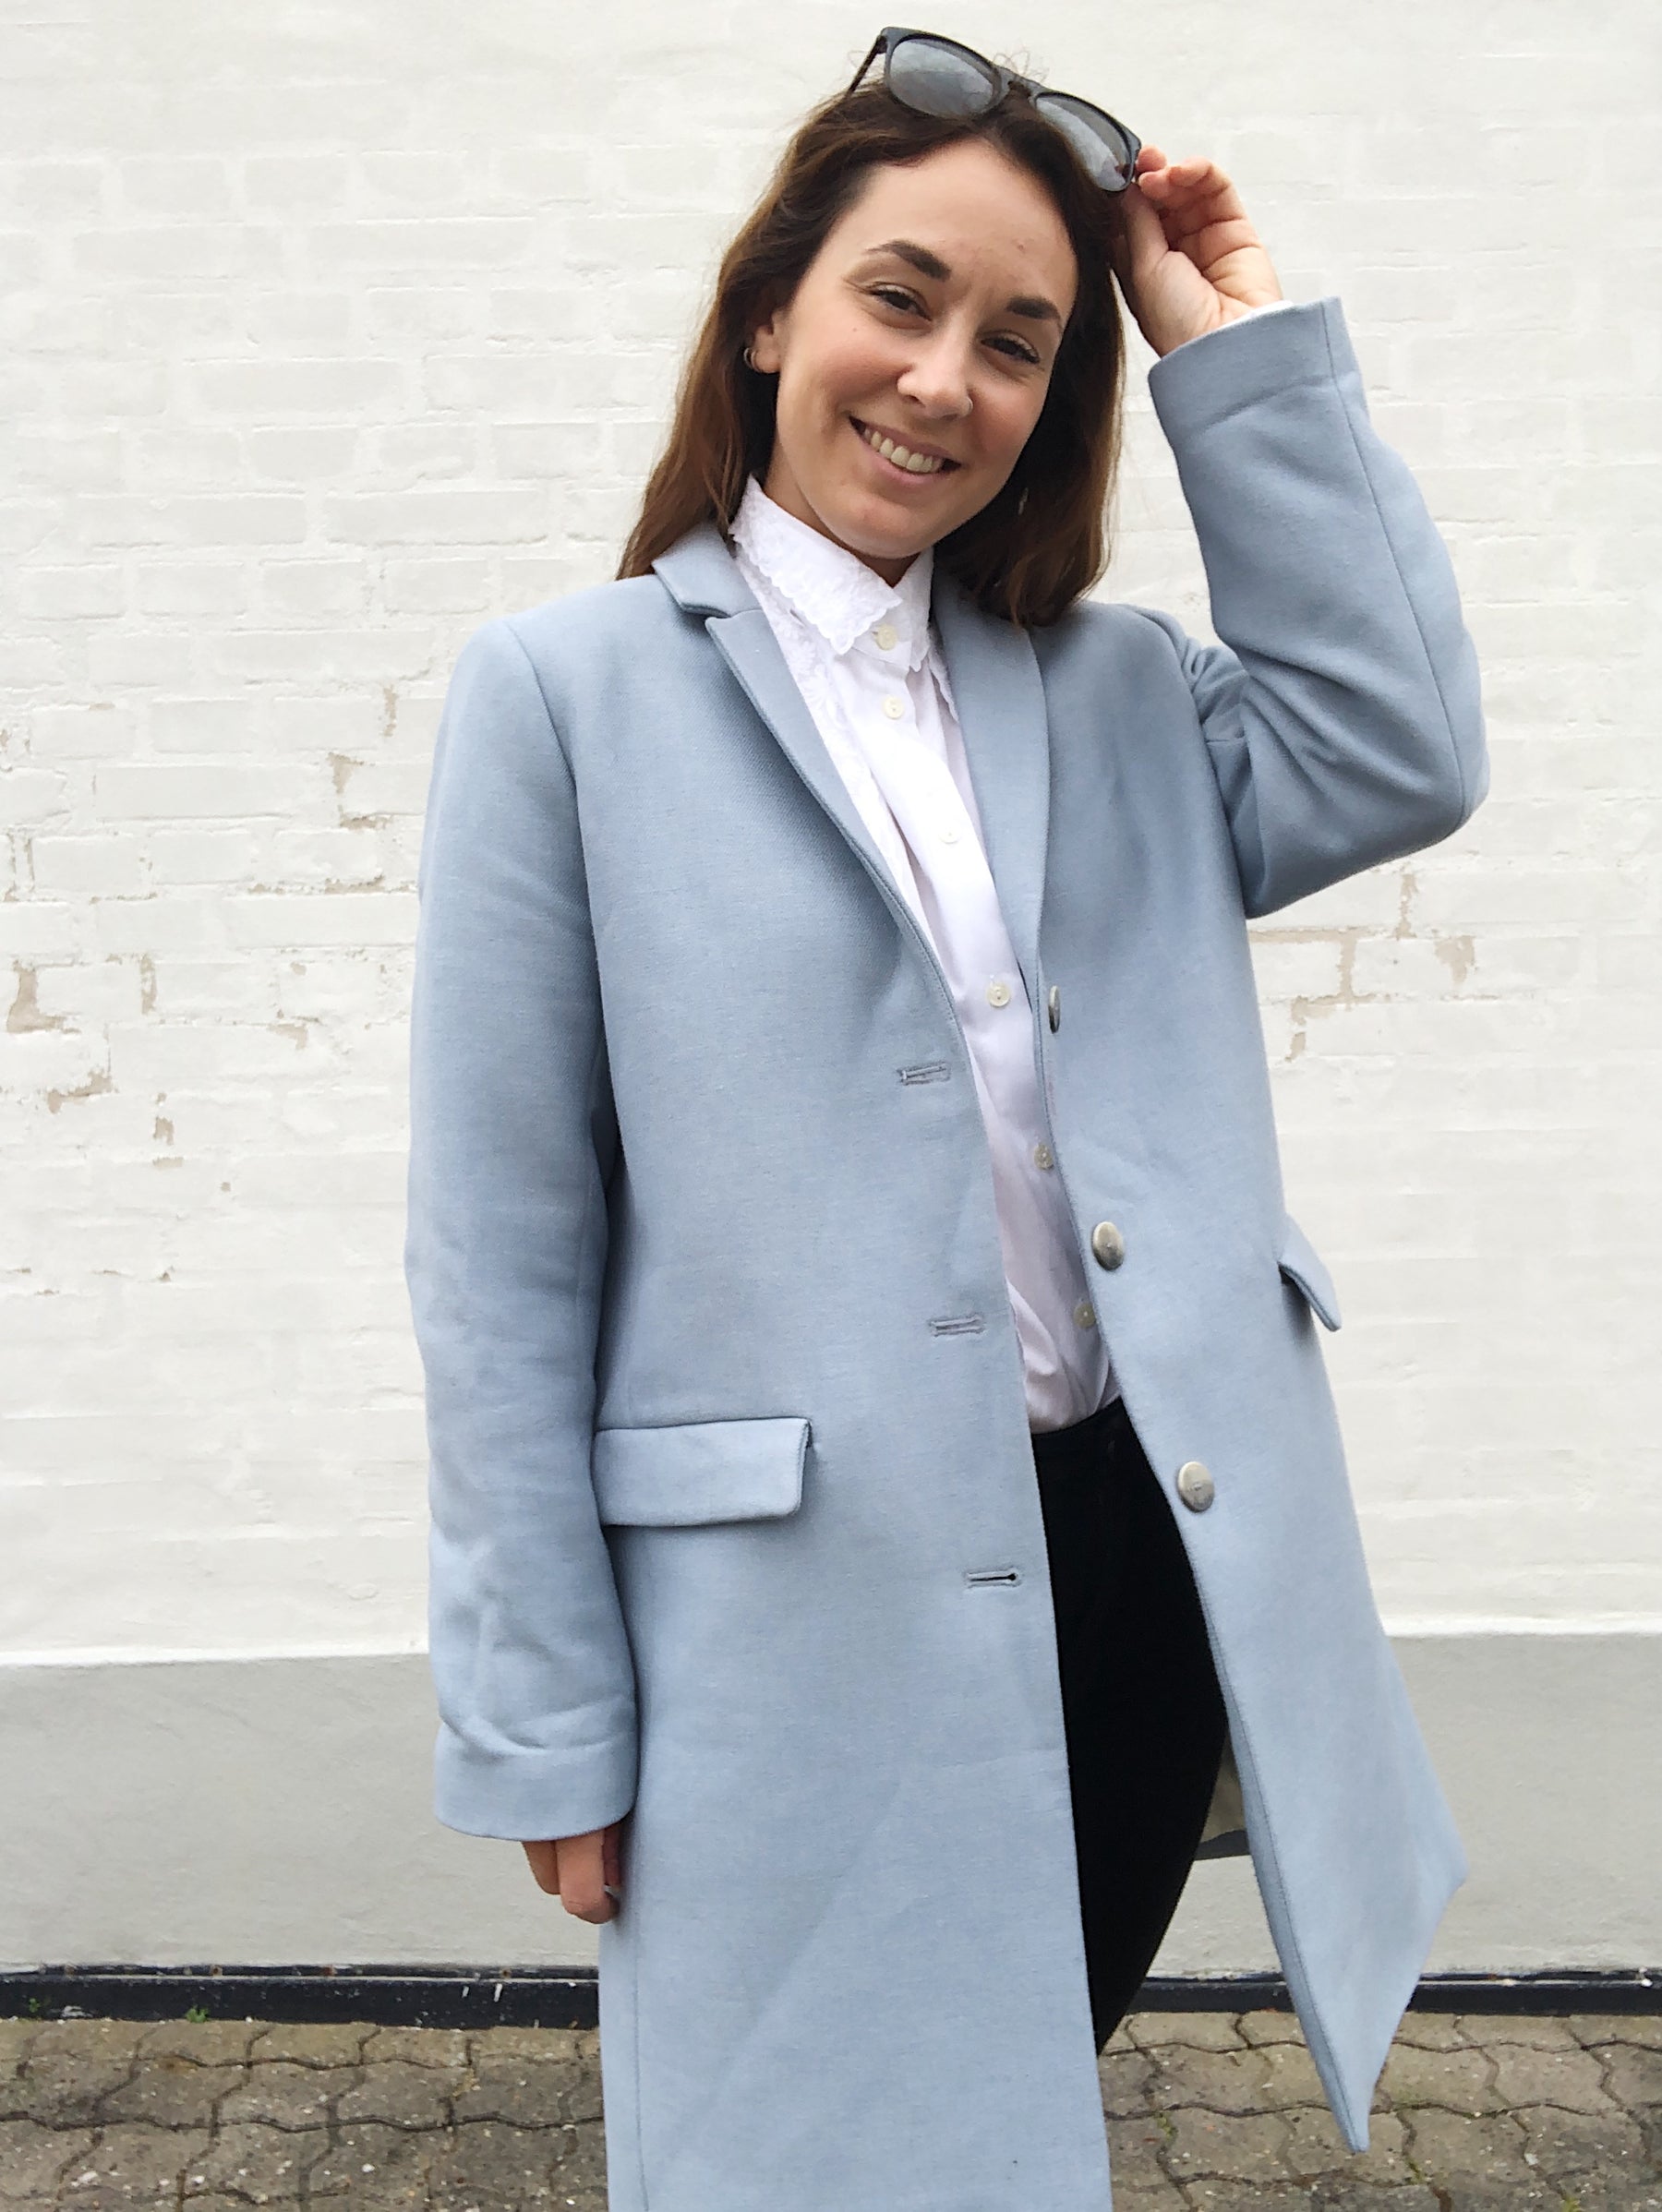 schweizisk Partina City Mor Pastel blå frakke - Secondhand overtøj - Samsøe Samsøe frakke